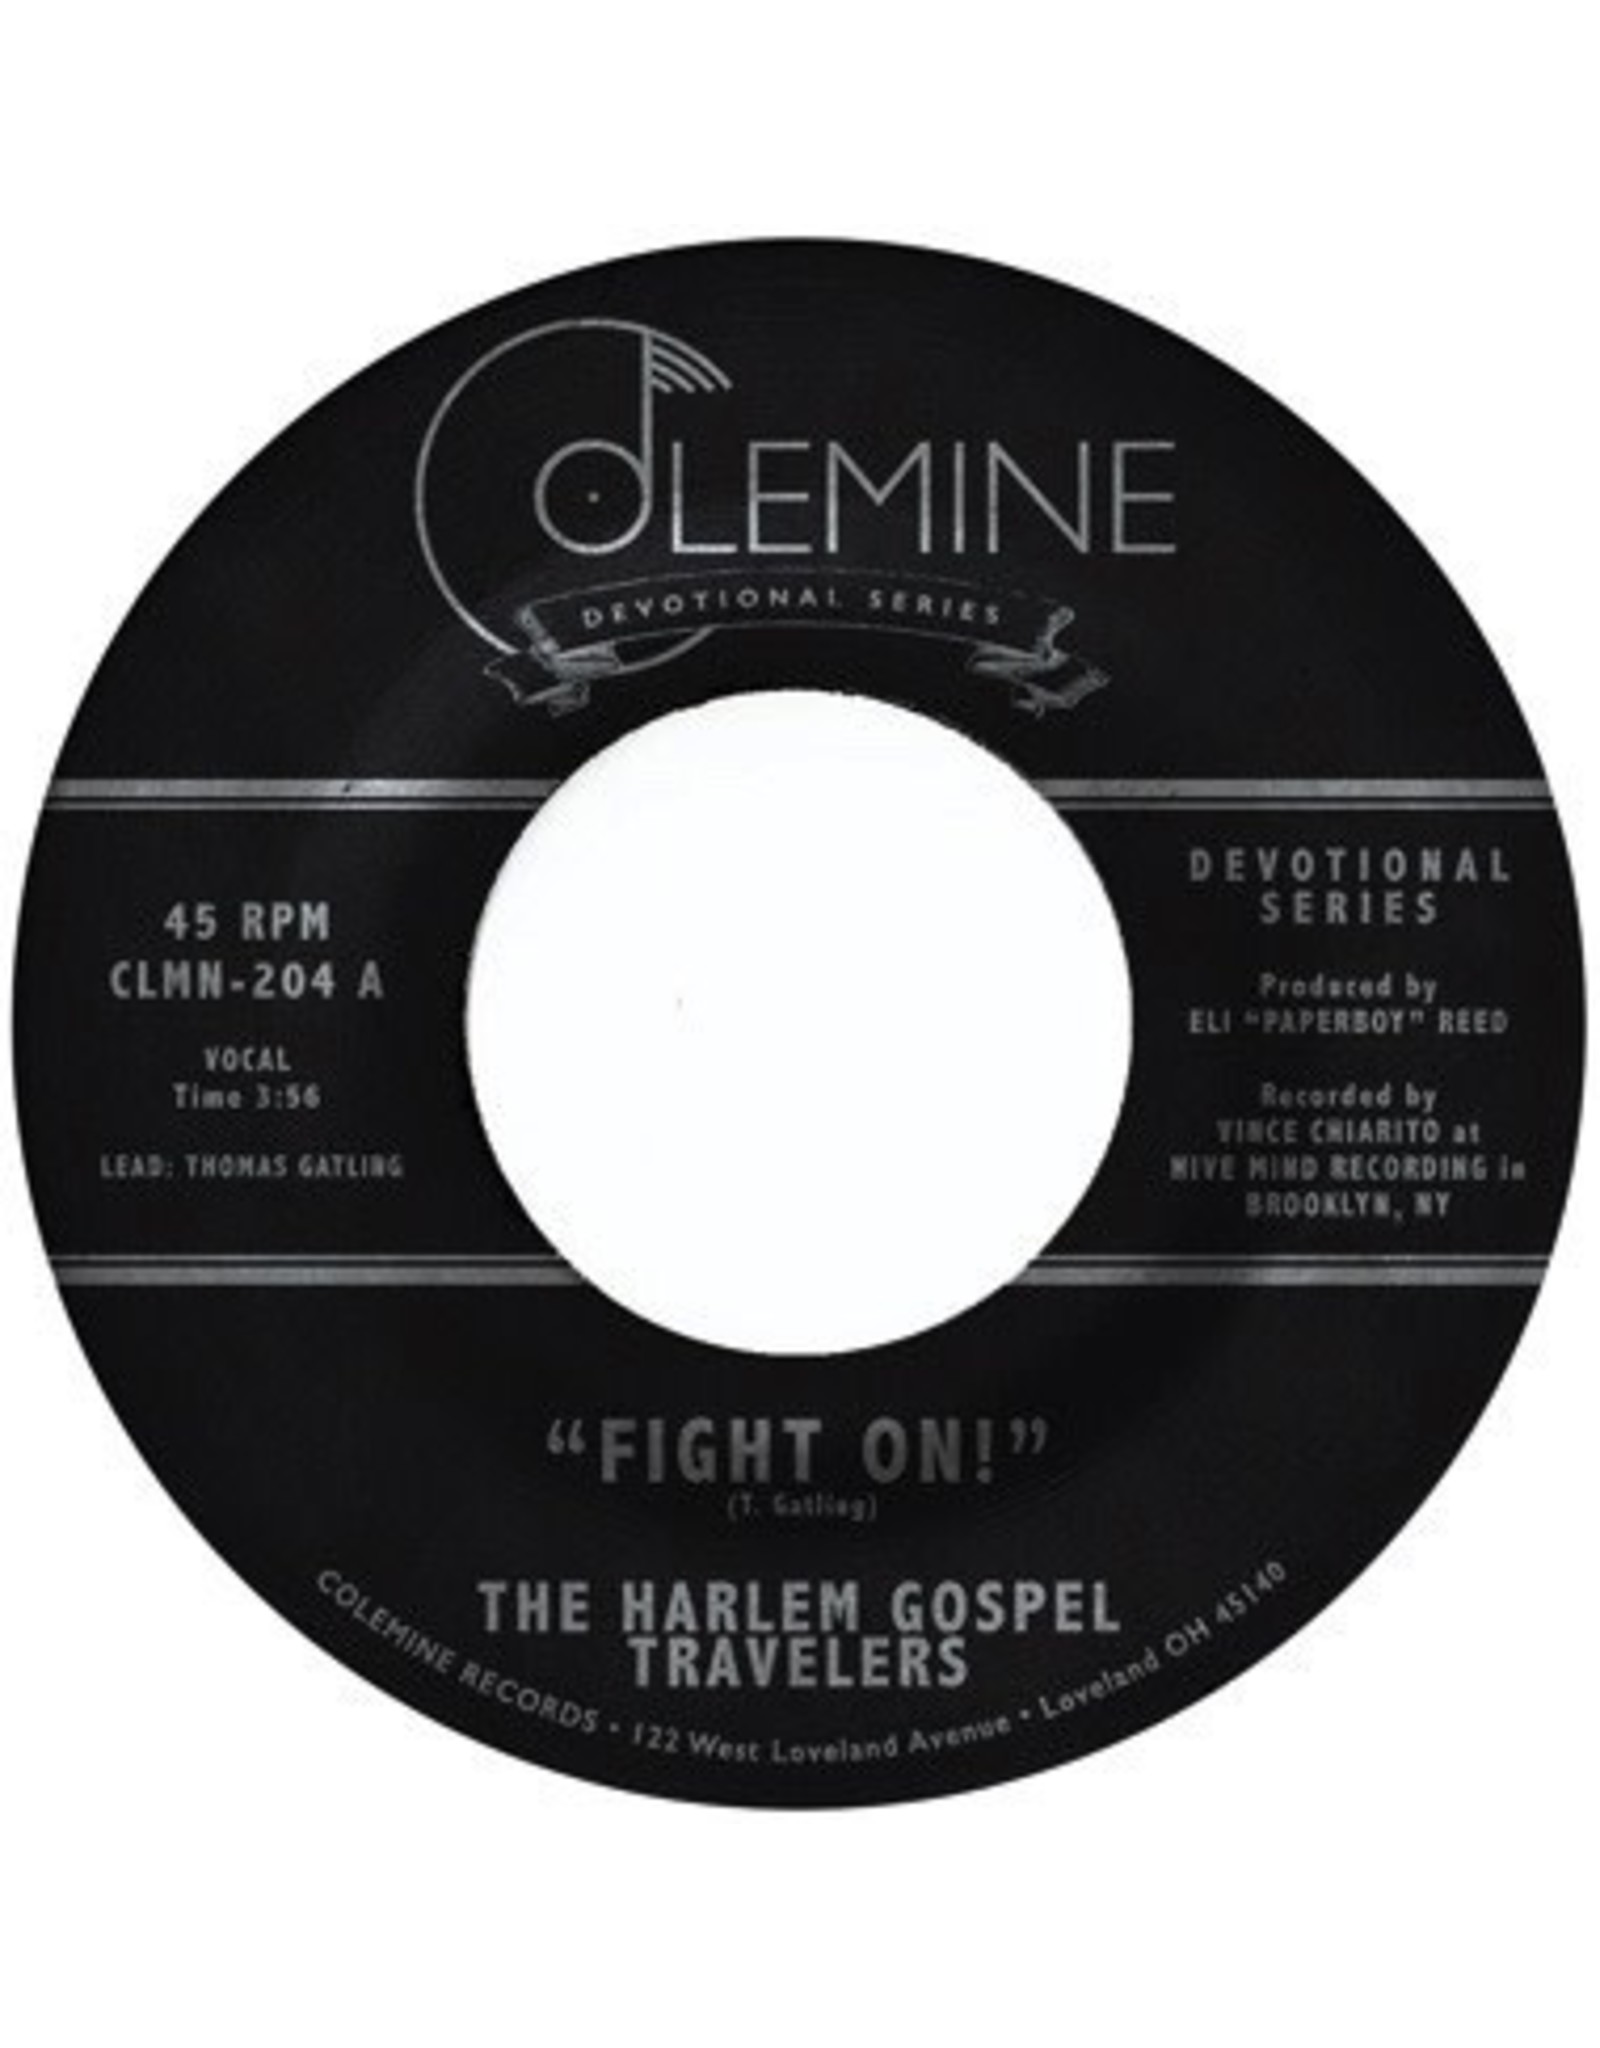 New Vinyl The Harlem Gospel Travelers - Fight On!